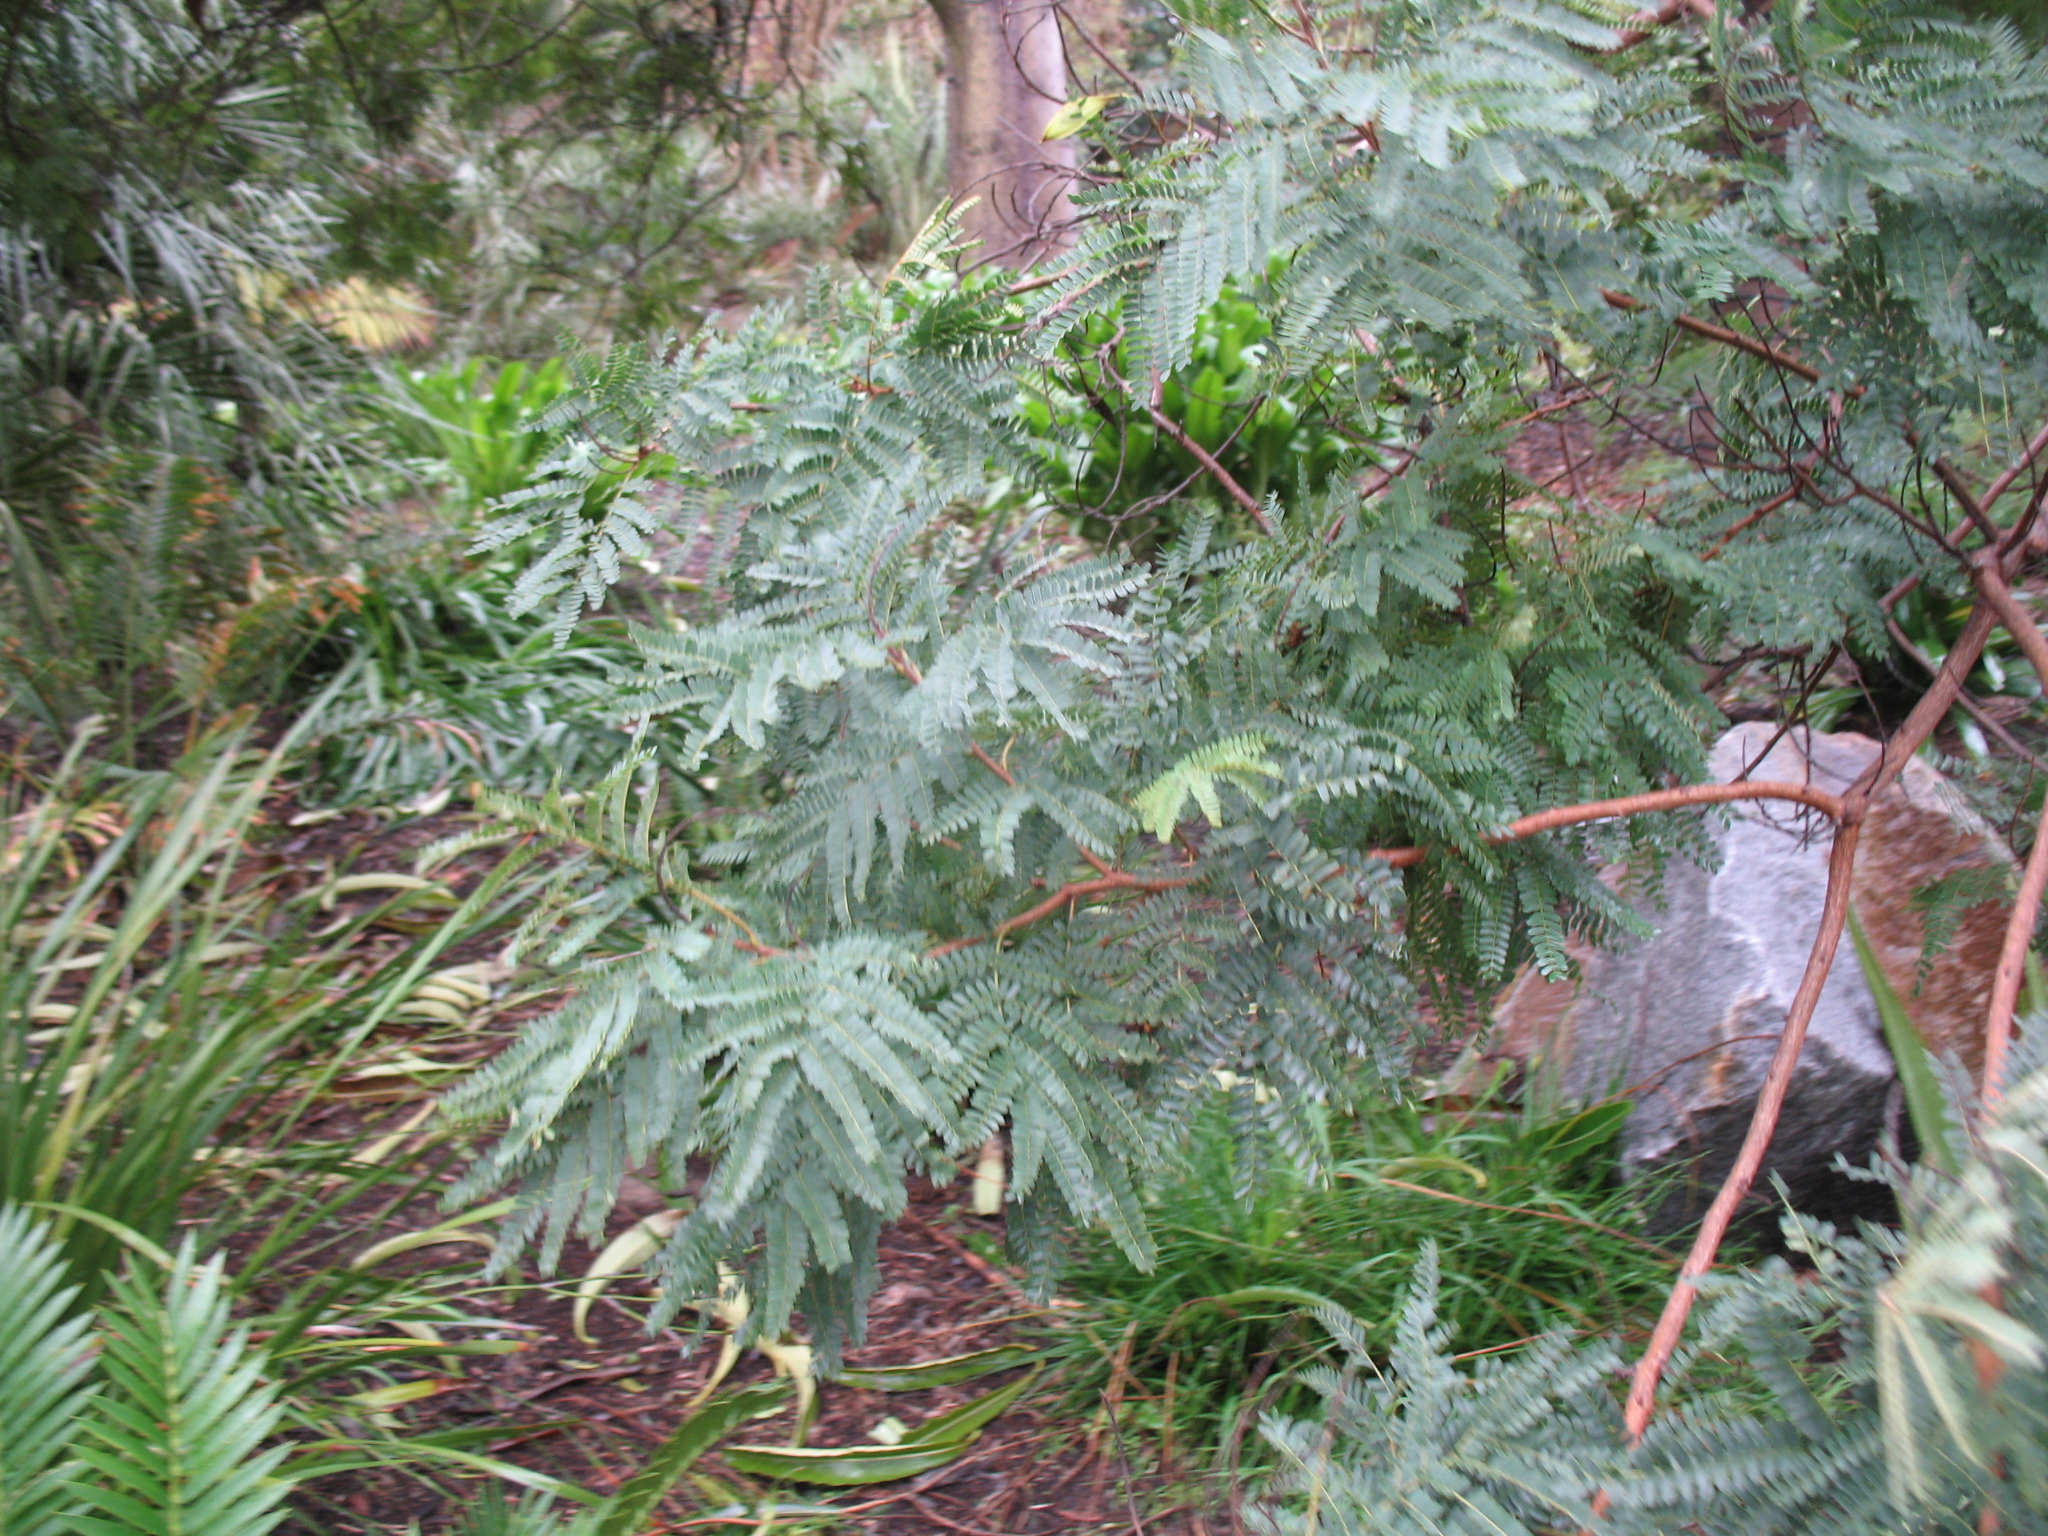 Peltophorum africanum / Peltophorum africanum